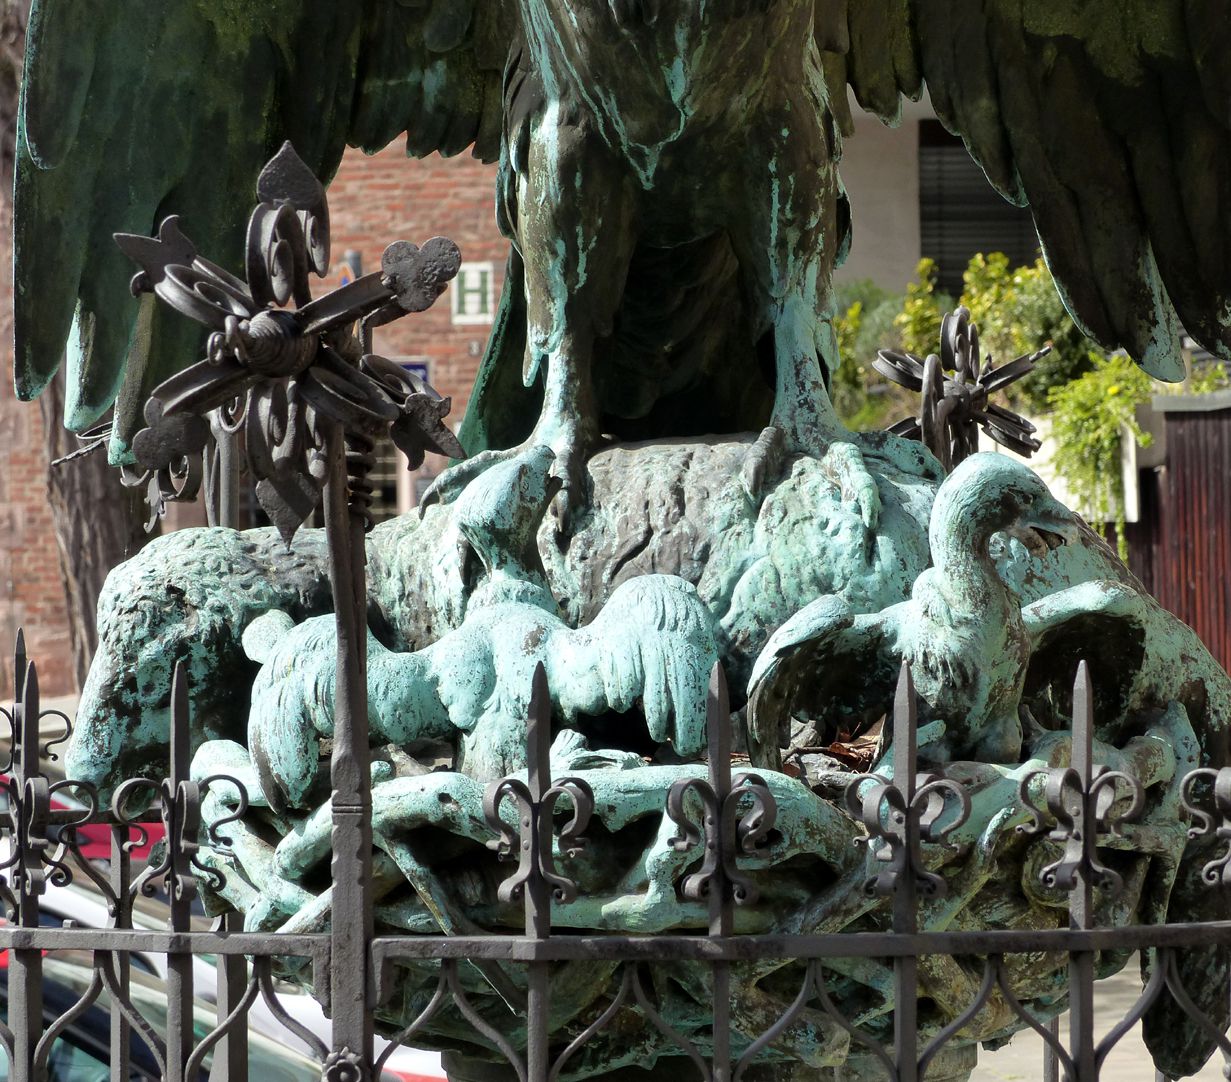 Geiersbrünnlein (Little vulture fountain) Vulture´s nest